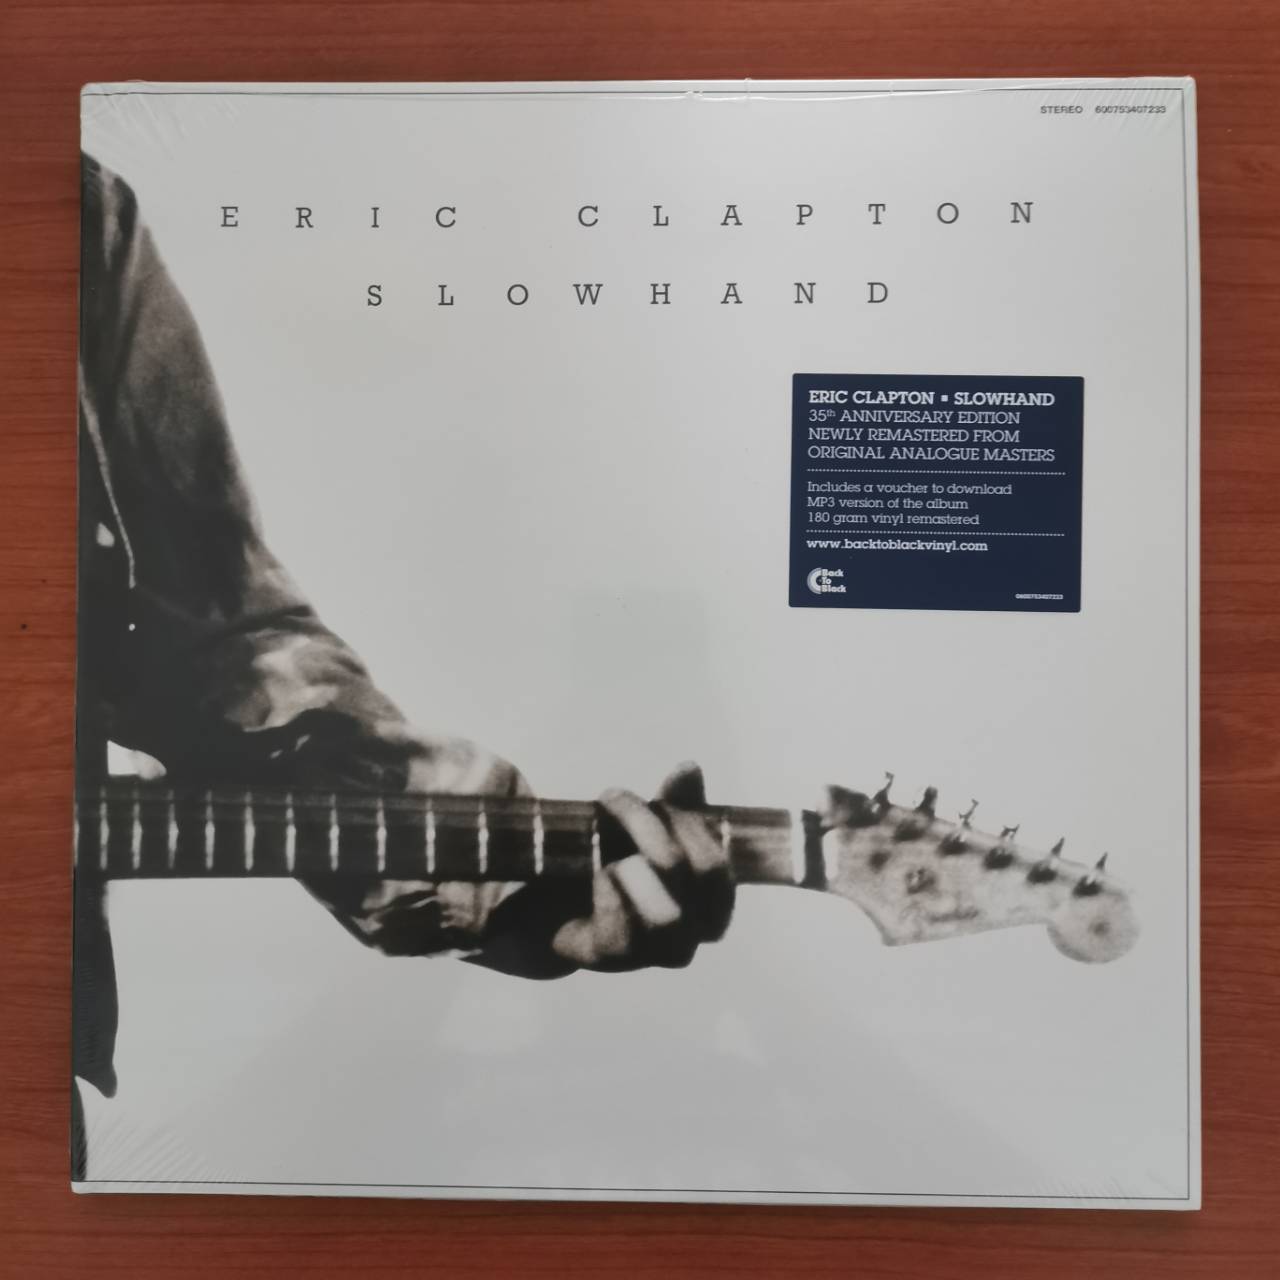 แผ่นเสียง Eric Clapton : Slow hand 35th anniversary, LP, Album, Reissue, Remastered 180 Gram, Gatefold แผ่นเสียงใหม่ชีล